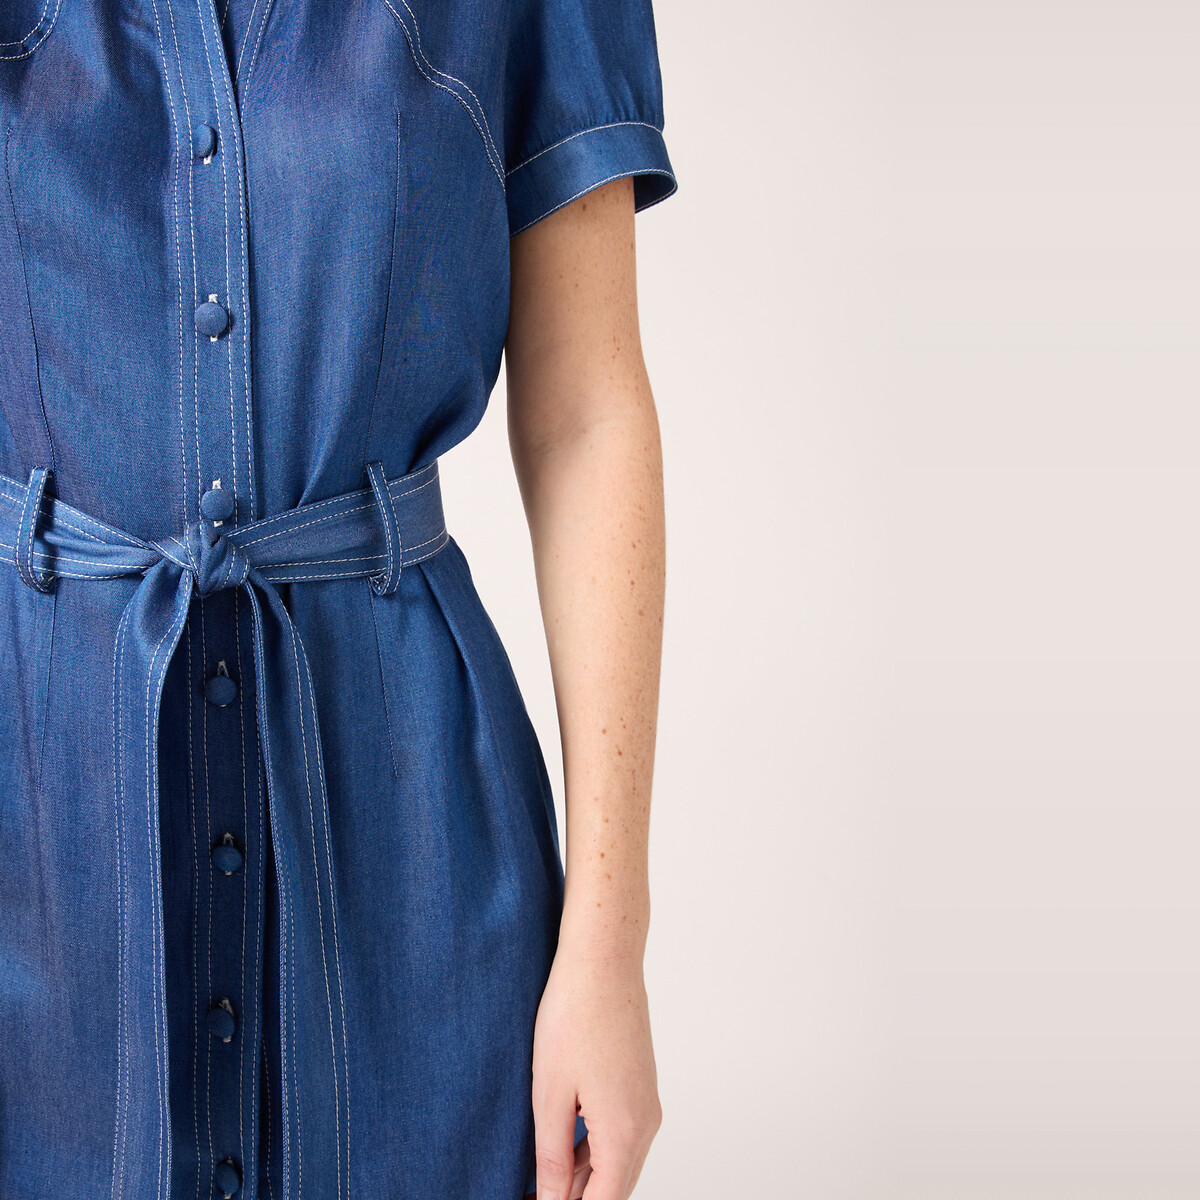 Платье Из вискозы на пуговицах спереди с ремешком 48 синий LaRedoute, размер 48 - фото 2